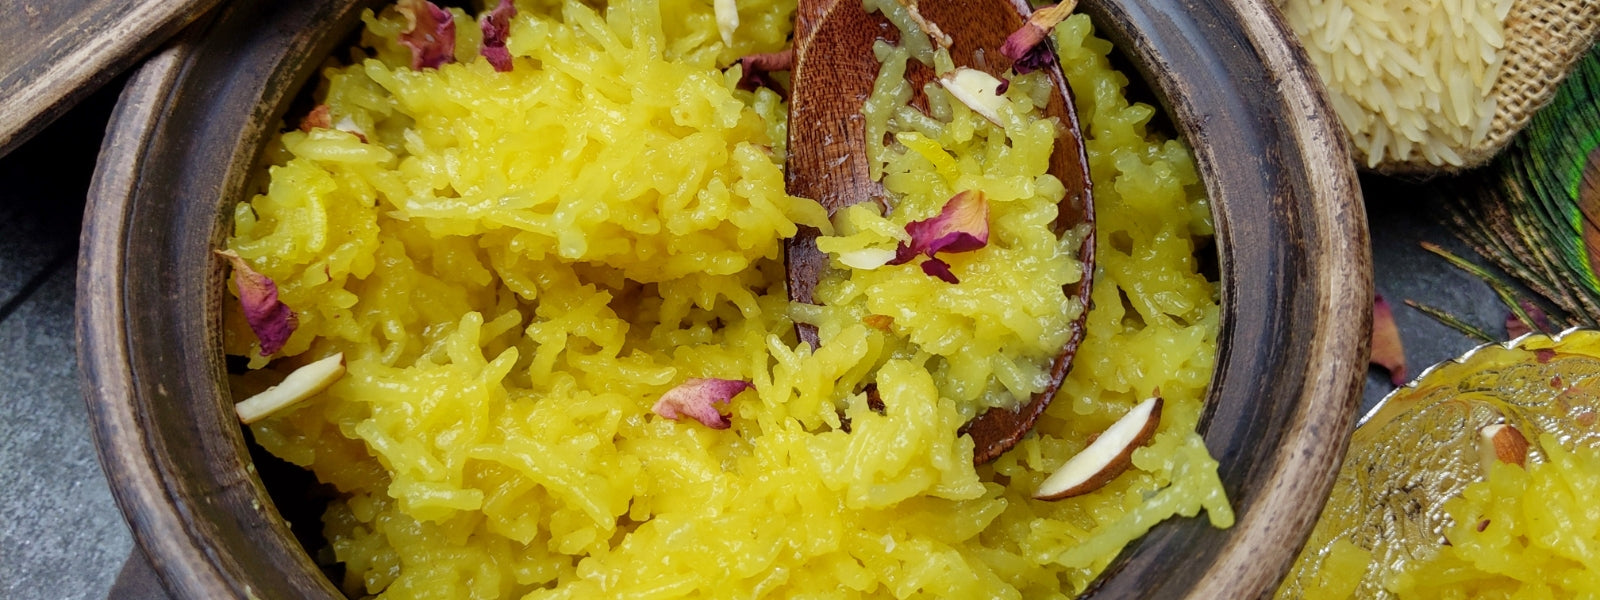 ज़र्दा रेसिपी | zarda Recipe | मीठे चावल रेसिपी | Sweet rice/ Pulao | Indian Festival favourite